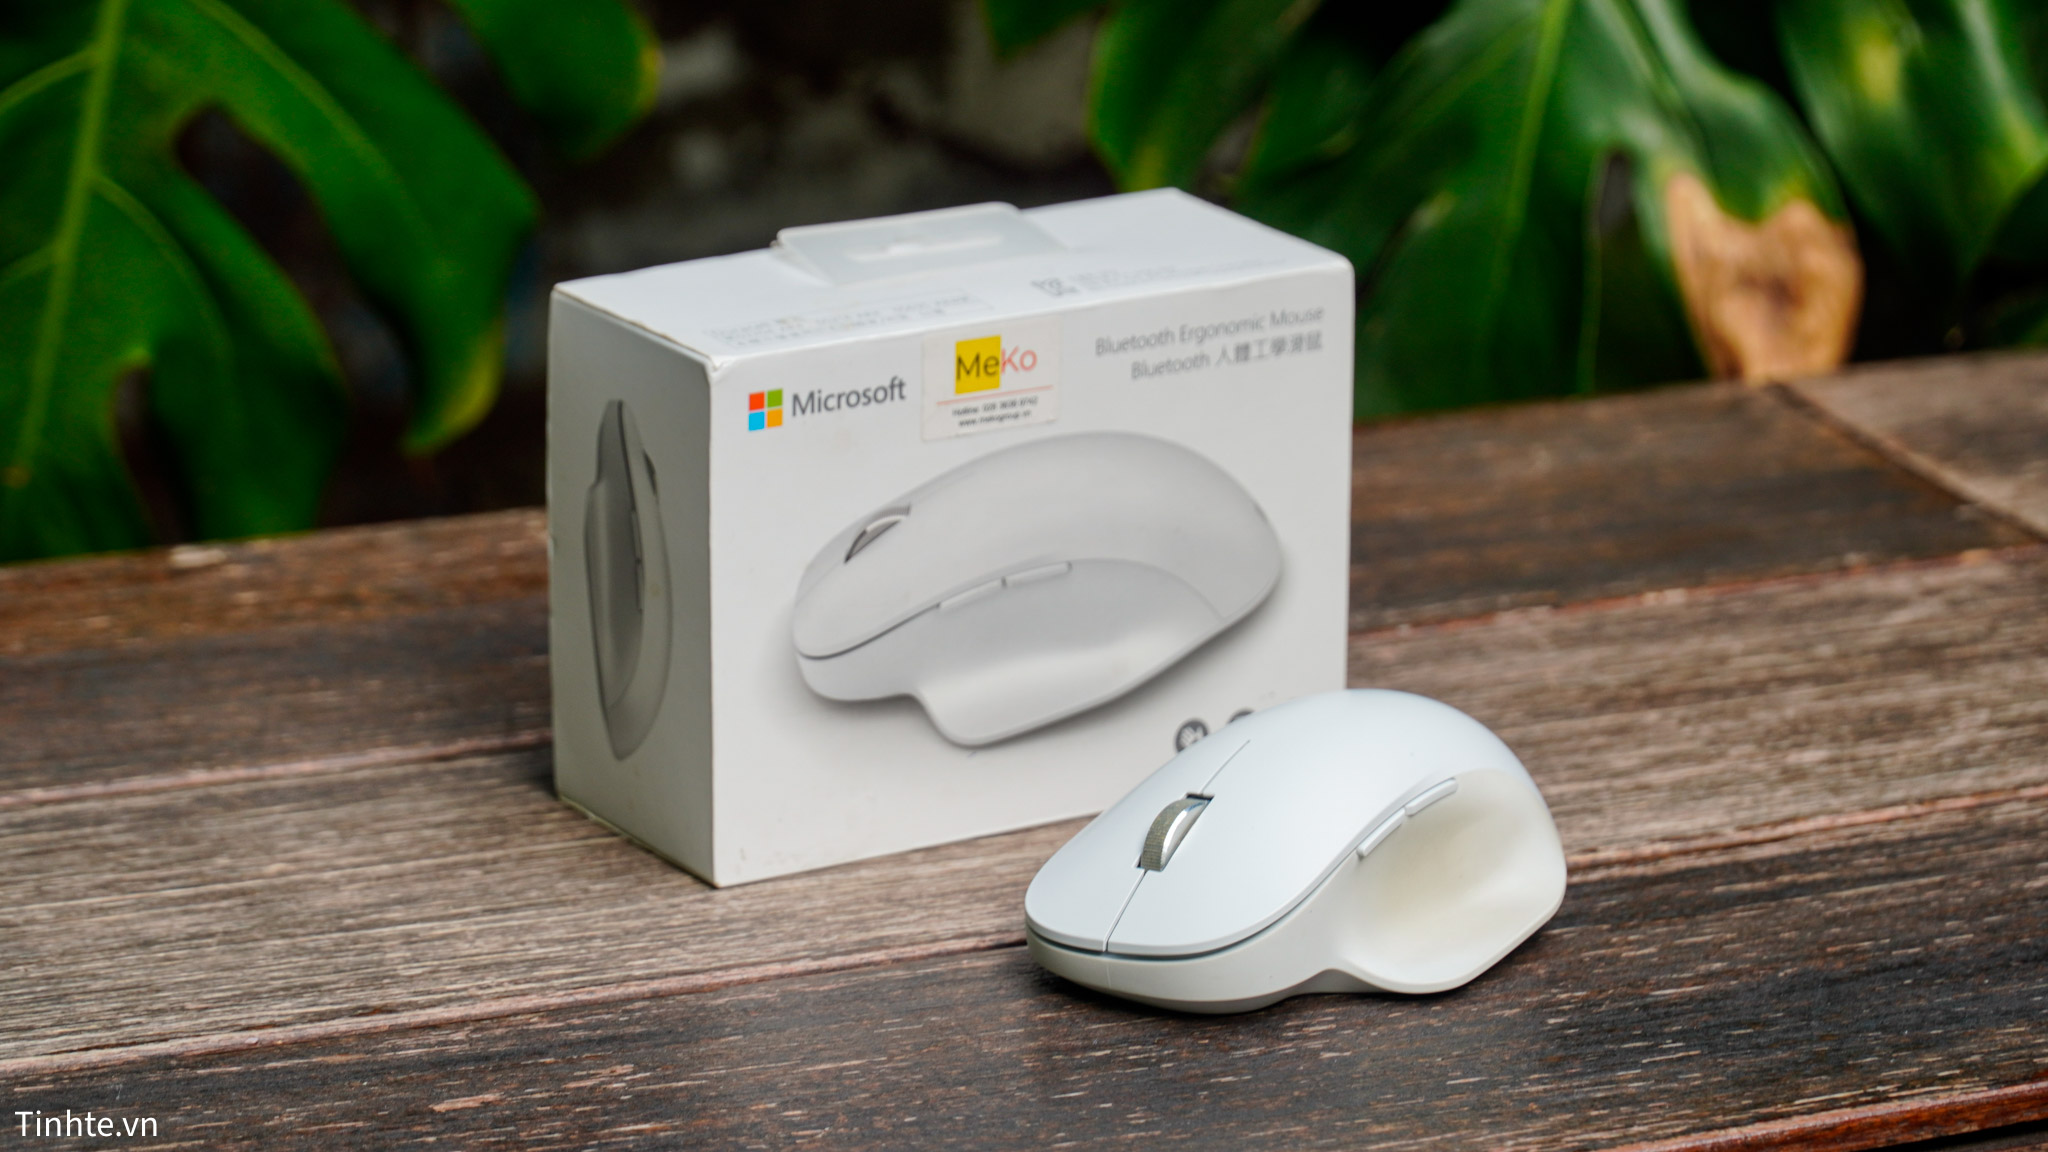 Trên tay Microsoft Bluetooth Ergonomic Mouse: Món phụ kiện mình ưng ý nhất sau khi đi chợ Lạc Xoong